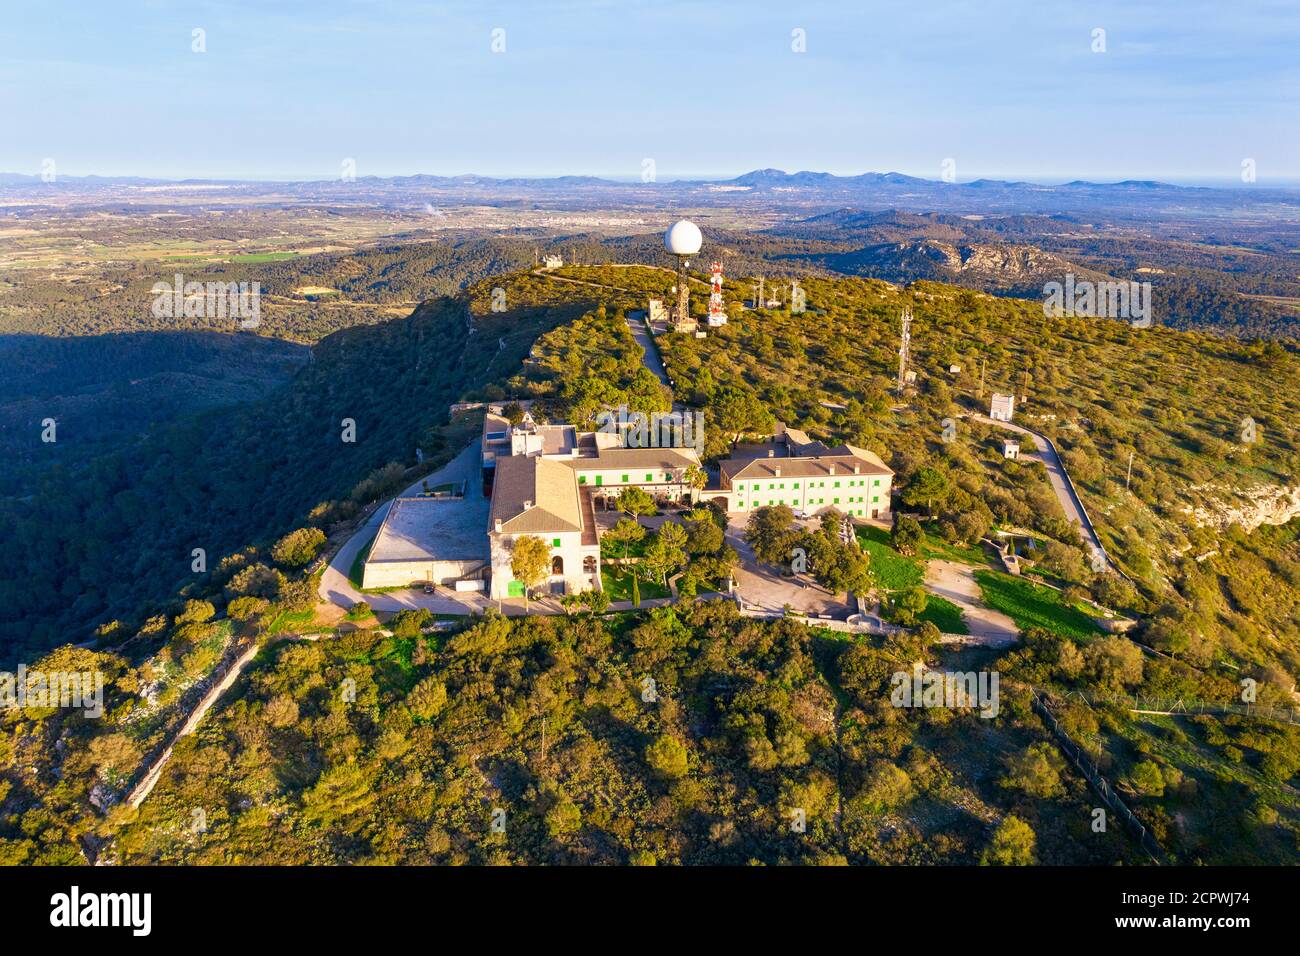 Santuari de Nostra Senyora de Cura monastery and antenna systems on the Puig de Randa mountain, Pla de Mallorca region, drone image, Mallorca, Stock Photo